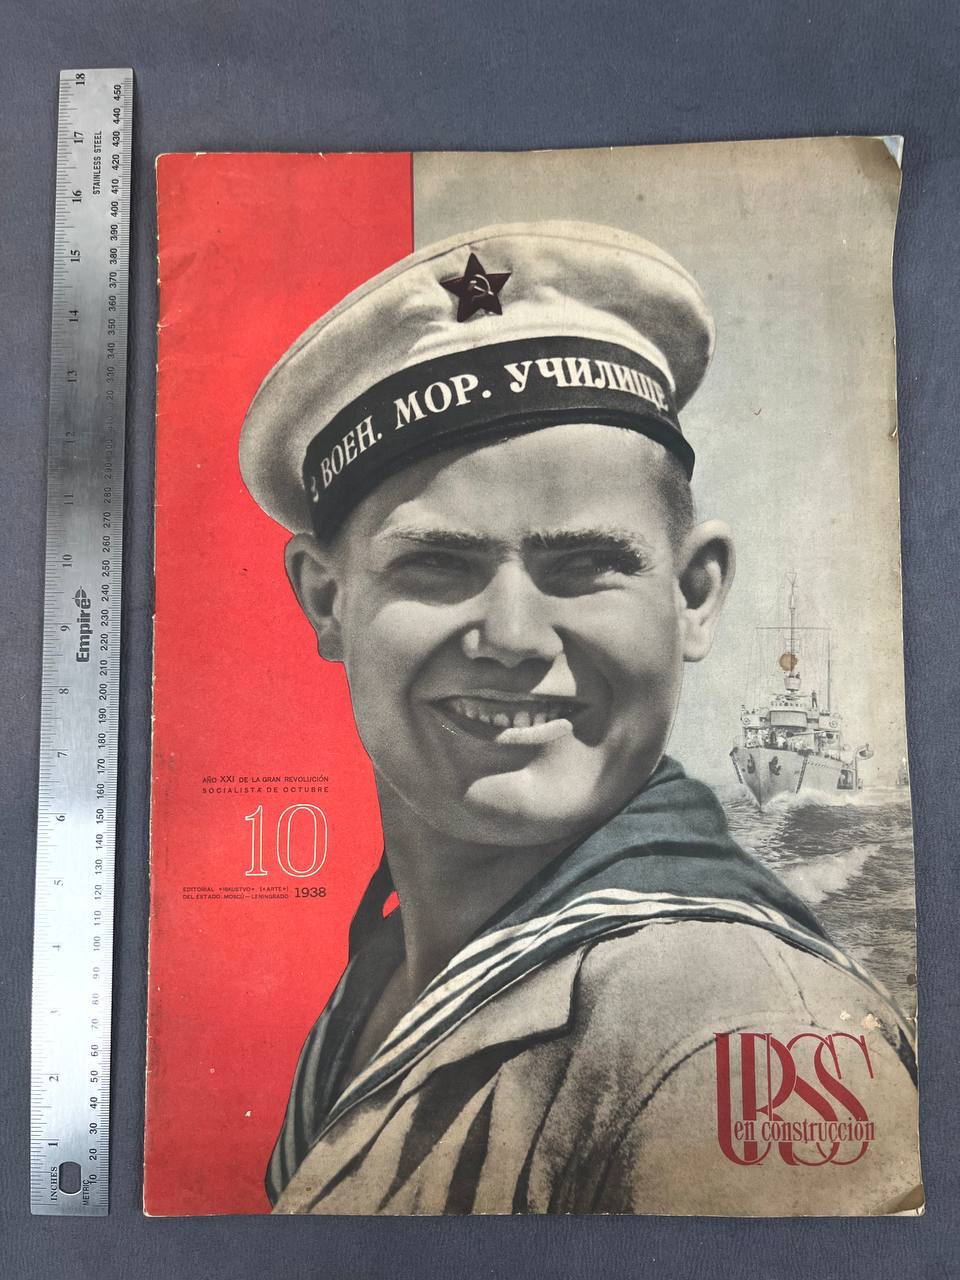 Журнал Военно-морской флот СССР 1938 на испанском. Большой формат